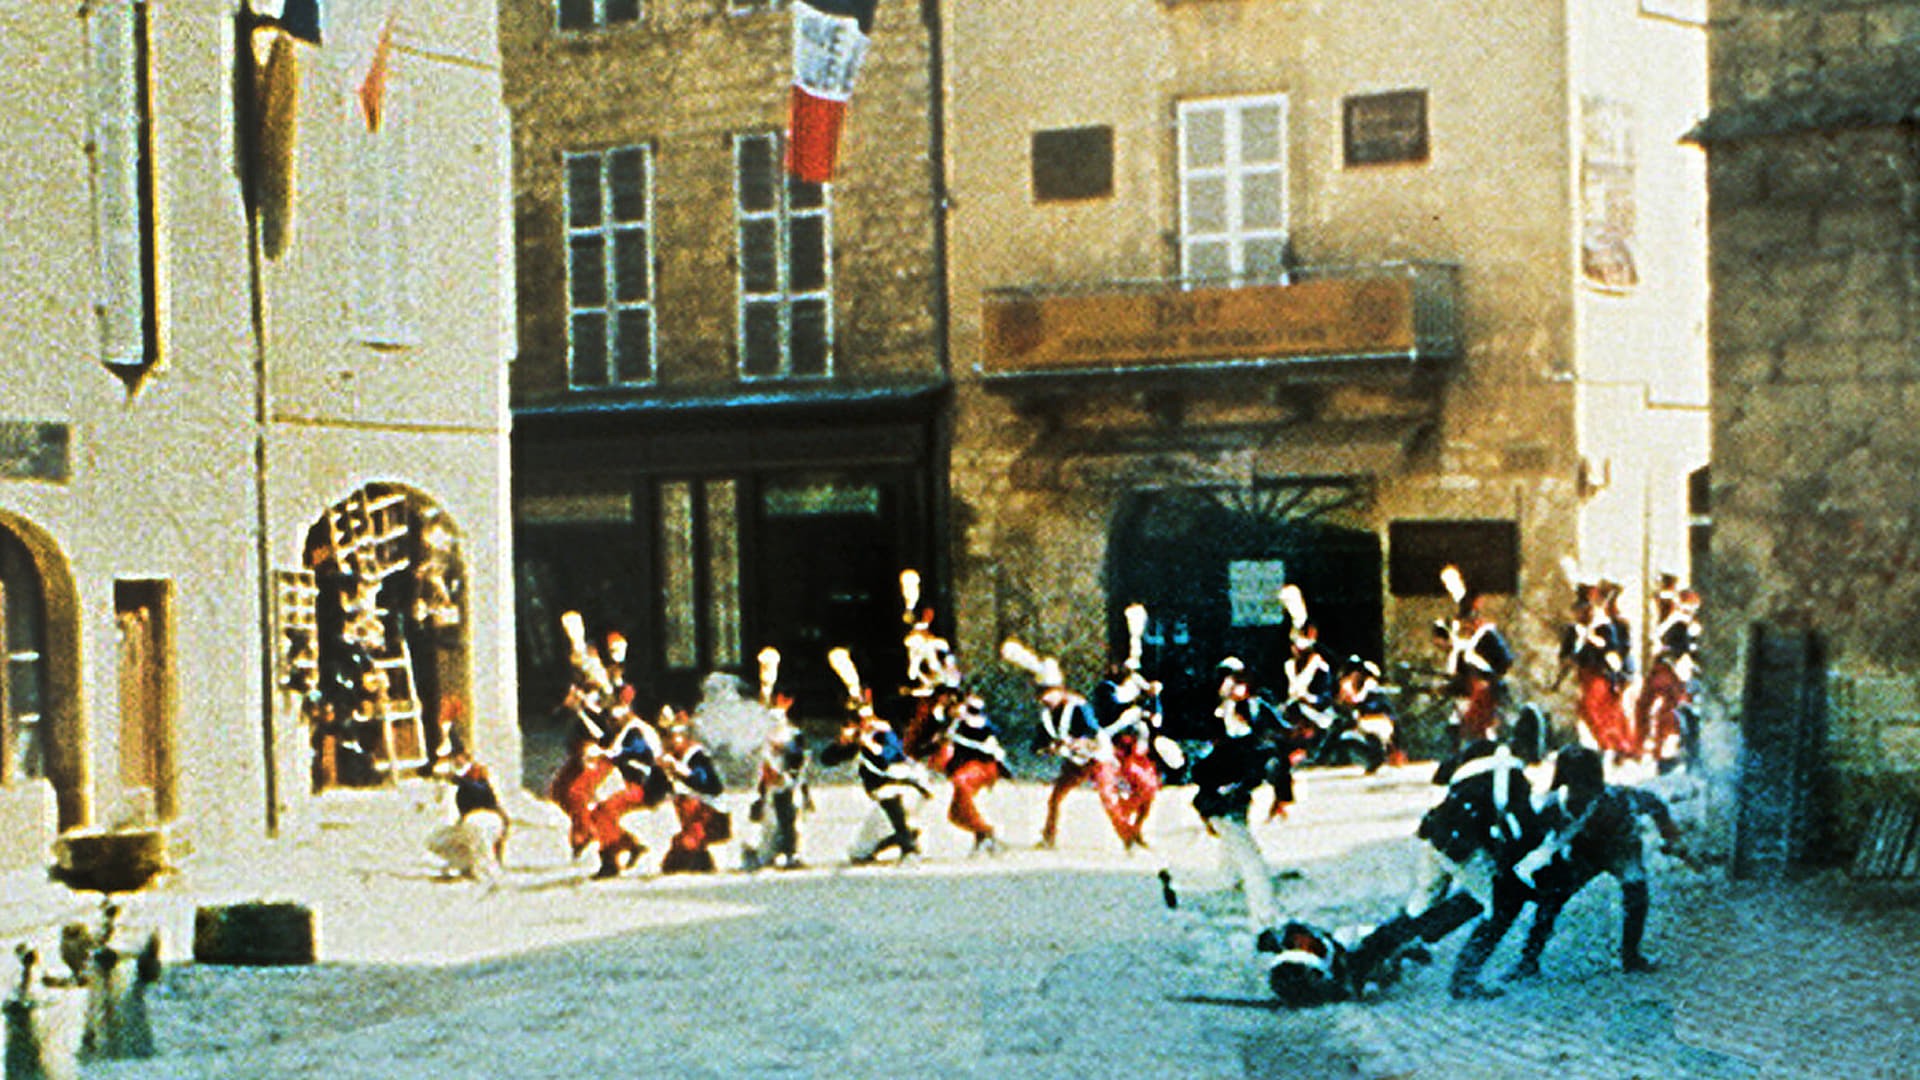 Les Misérables (1978)